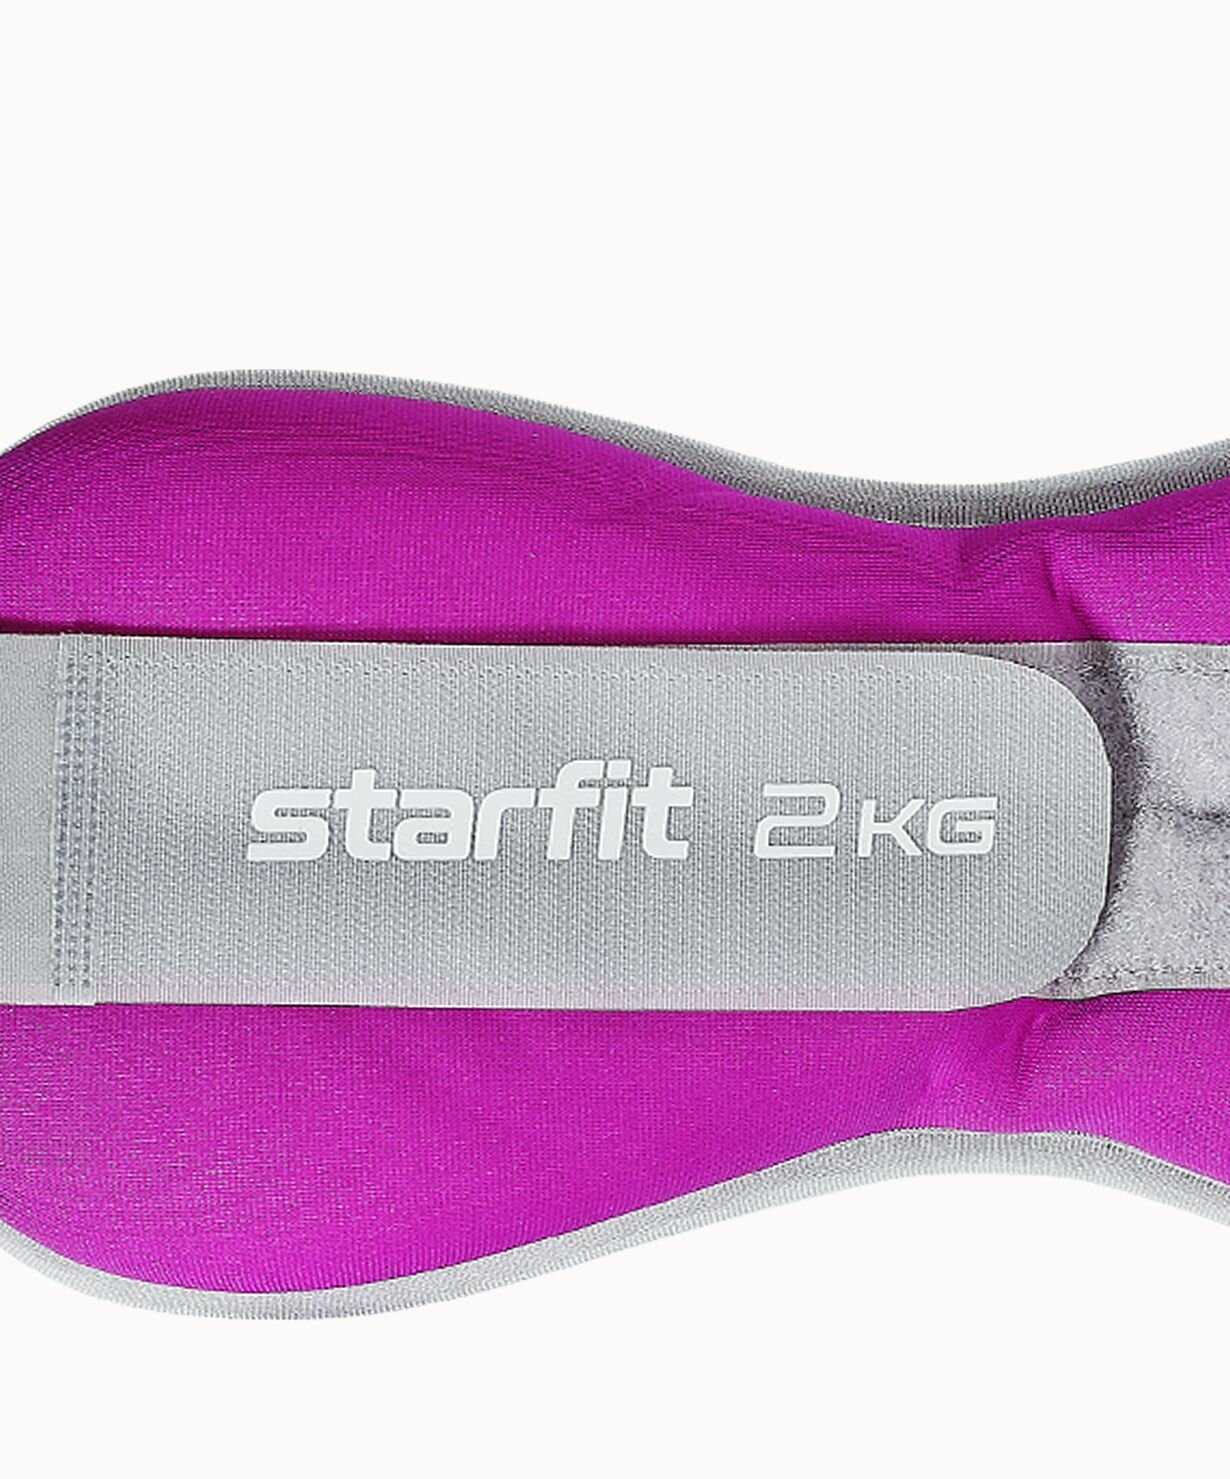 Утяжелители универсальные Starfit Wt-502, 2 кг, фиолетовый/серый